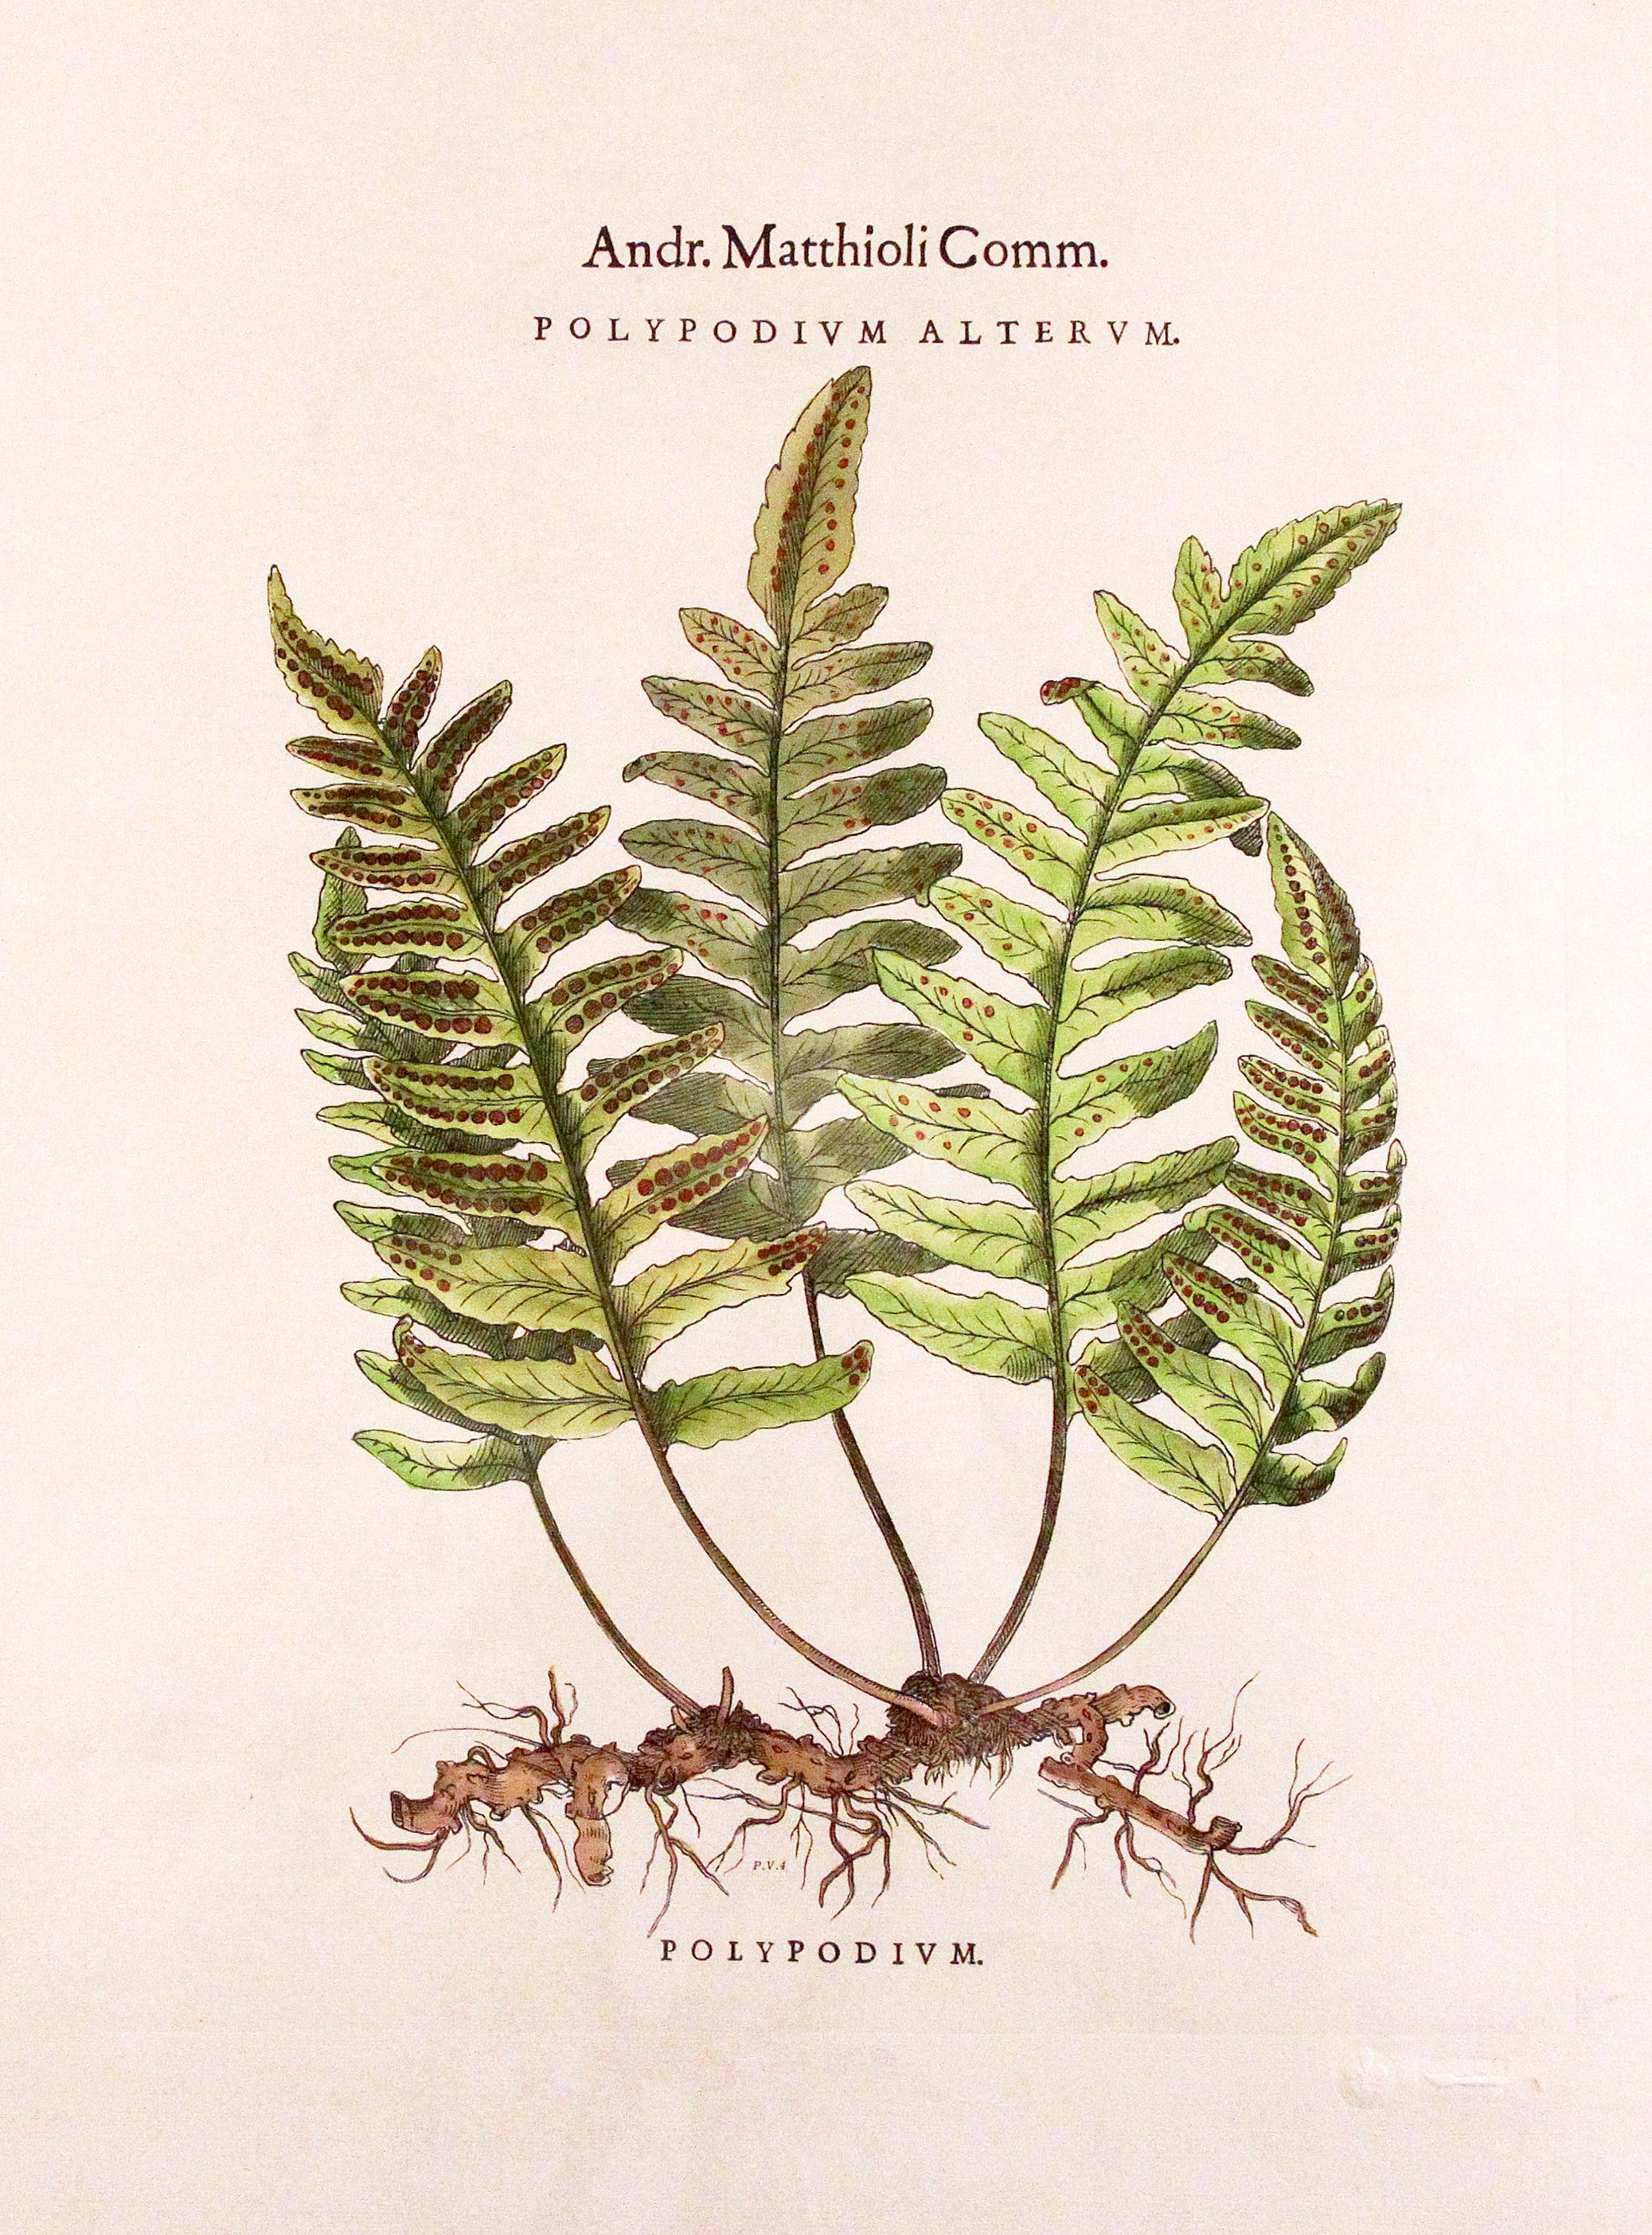 Andr. Matthioli Comm.
Polypodium Alternum dans un cadre doré avec un passe-partout en laurier pâle
Mesures 22 L x 28 H x 1 P 

Polypodium est un genre de fougères de la famille des Polypodiaceae, sous-famille des Polypodioideae, Le genre est